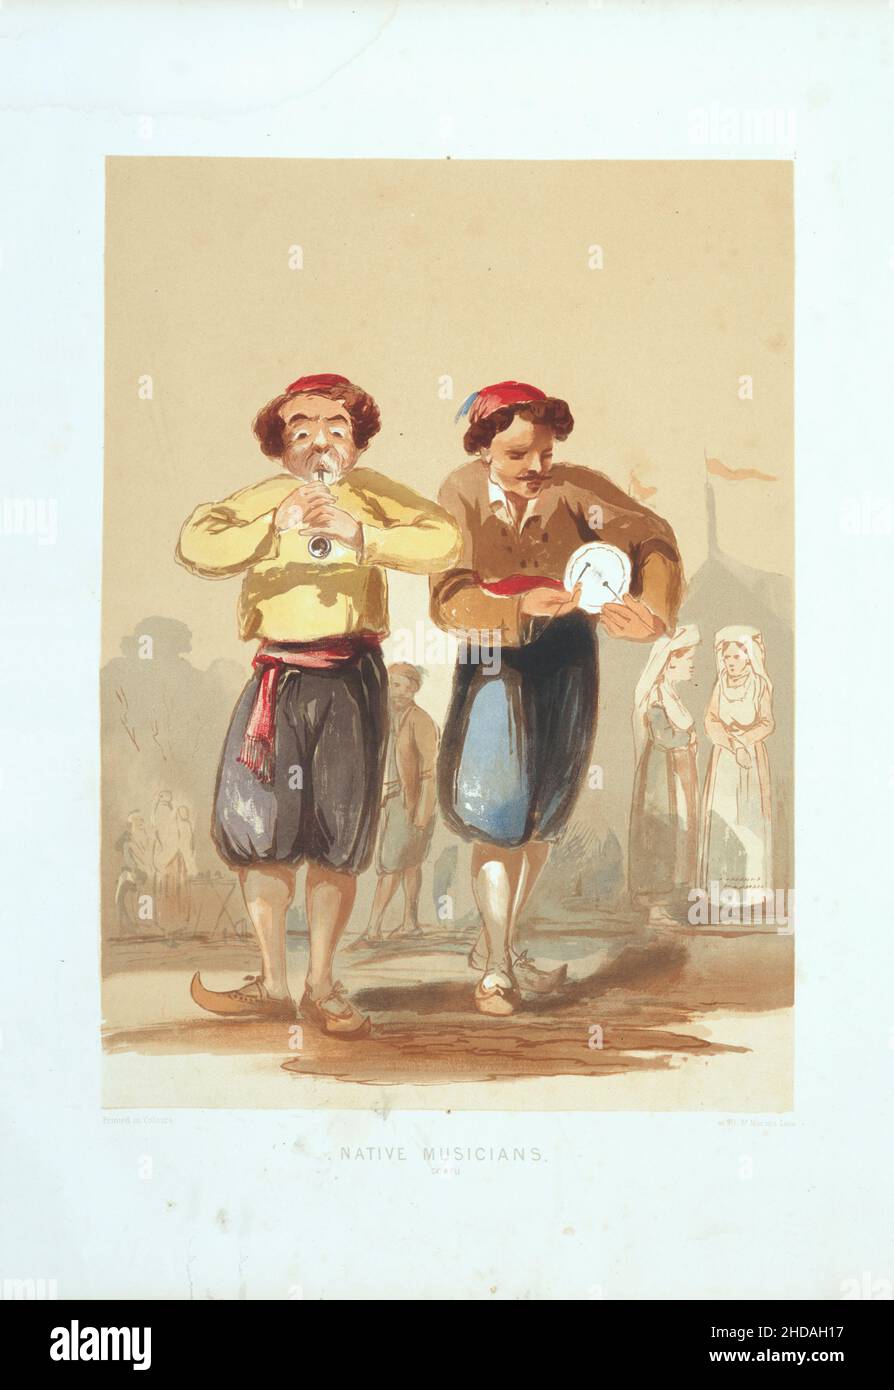 Lithographie de couleur vintage de l'Empire ottoman: Musiciens indigènes, Constantinople 1854, par Forbes Mac Bean (artiste) et Justin Sutcliffe (lithographe) Banque D'Images